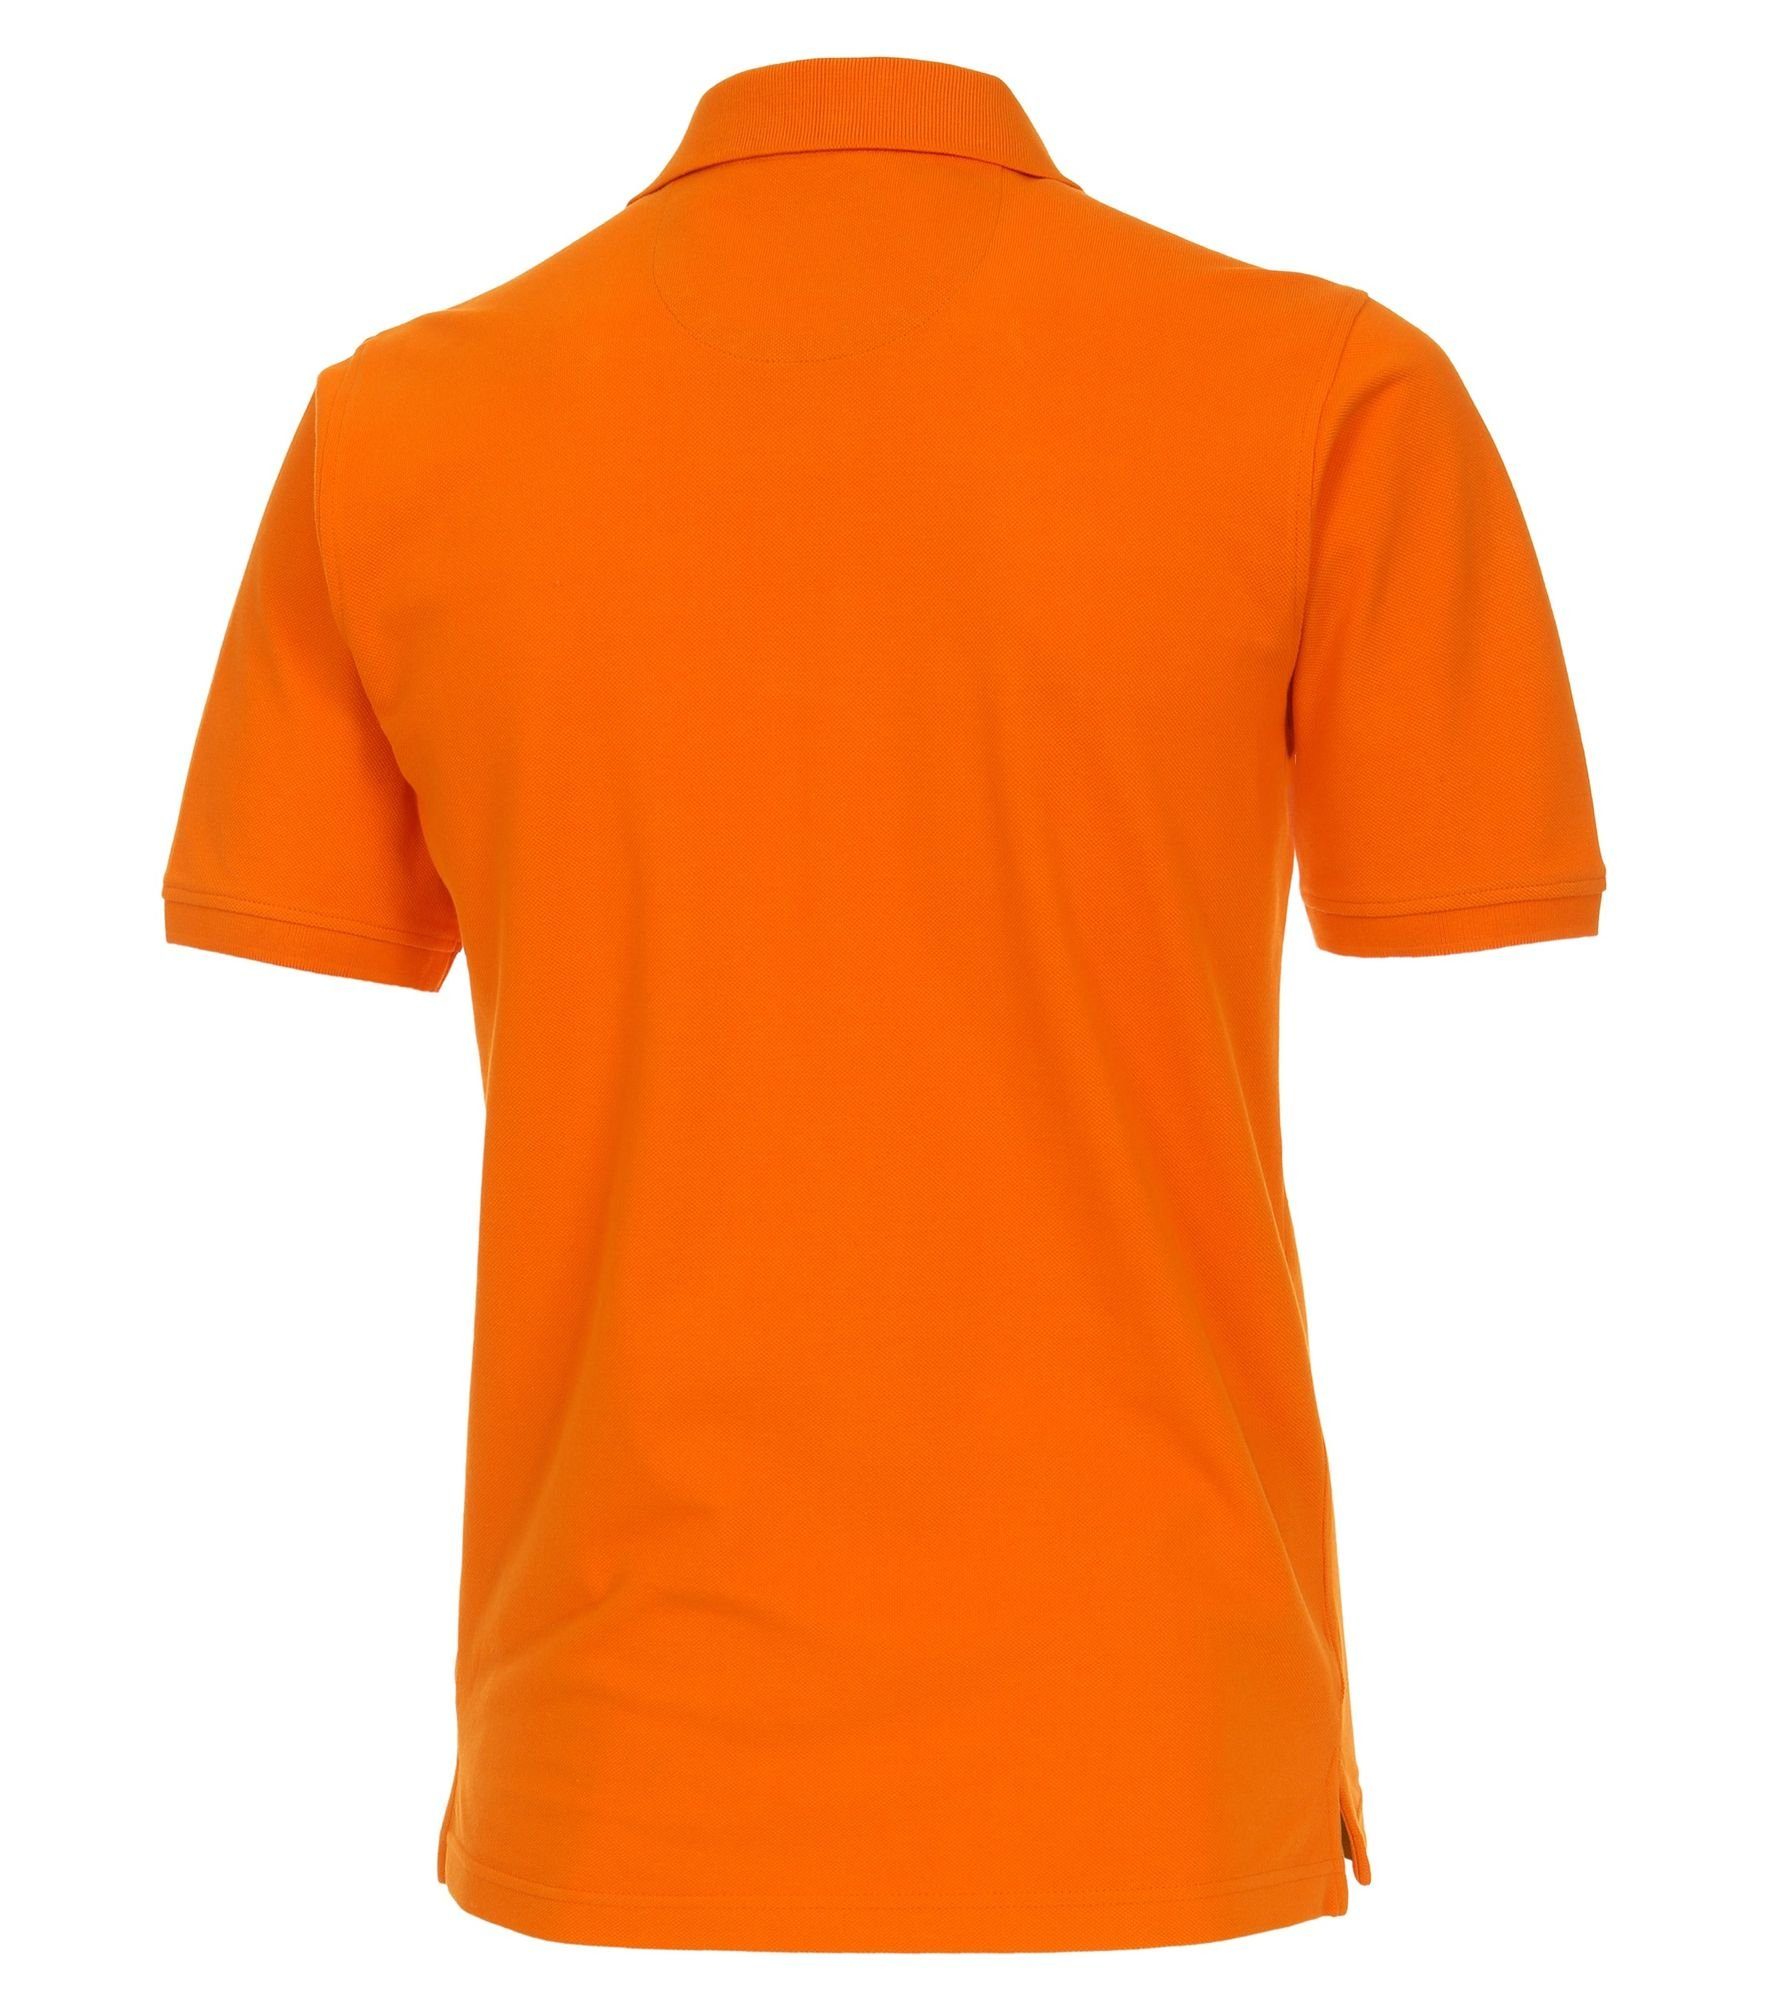 (201) Orange Redmond Poloshirt Polo-Shirt Piqué